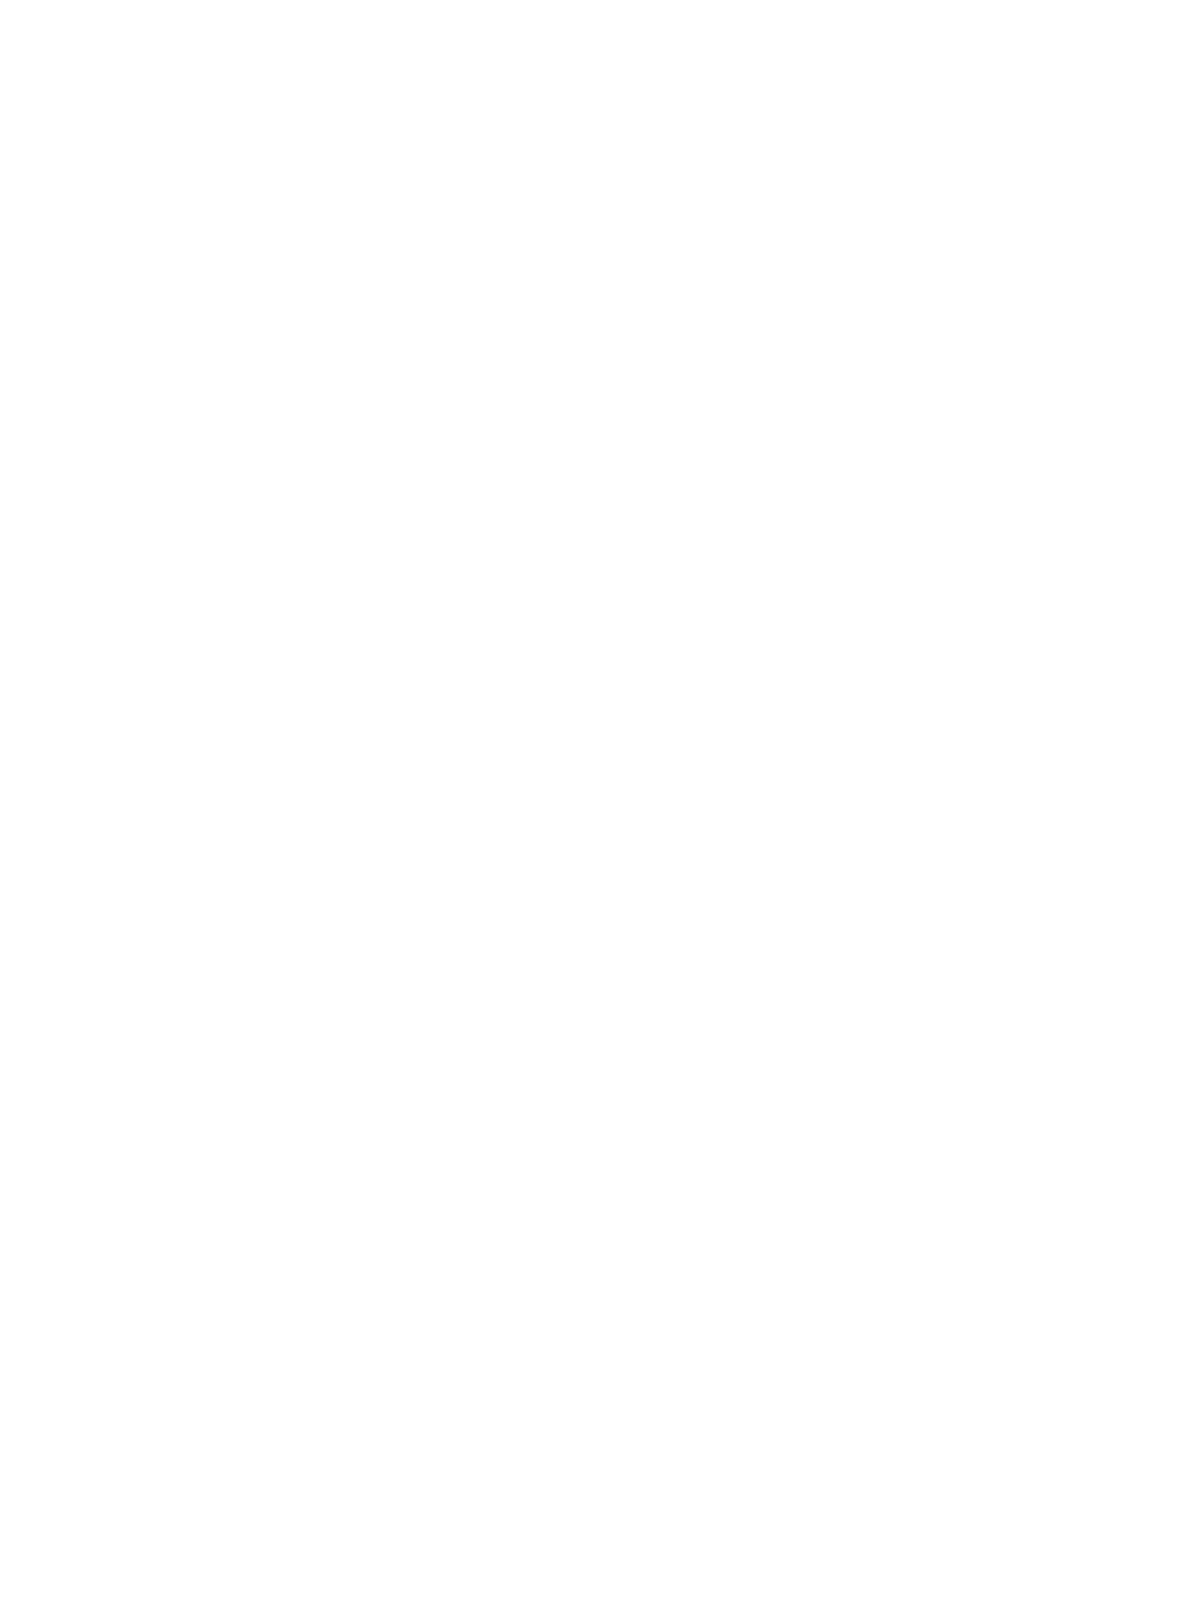 Липецк, Дворец культуры новолипецких металлургов, Фото А. Хейфеца